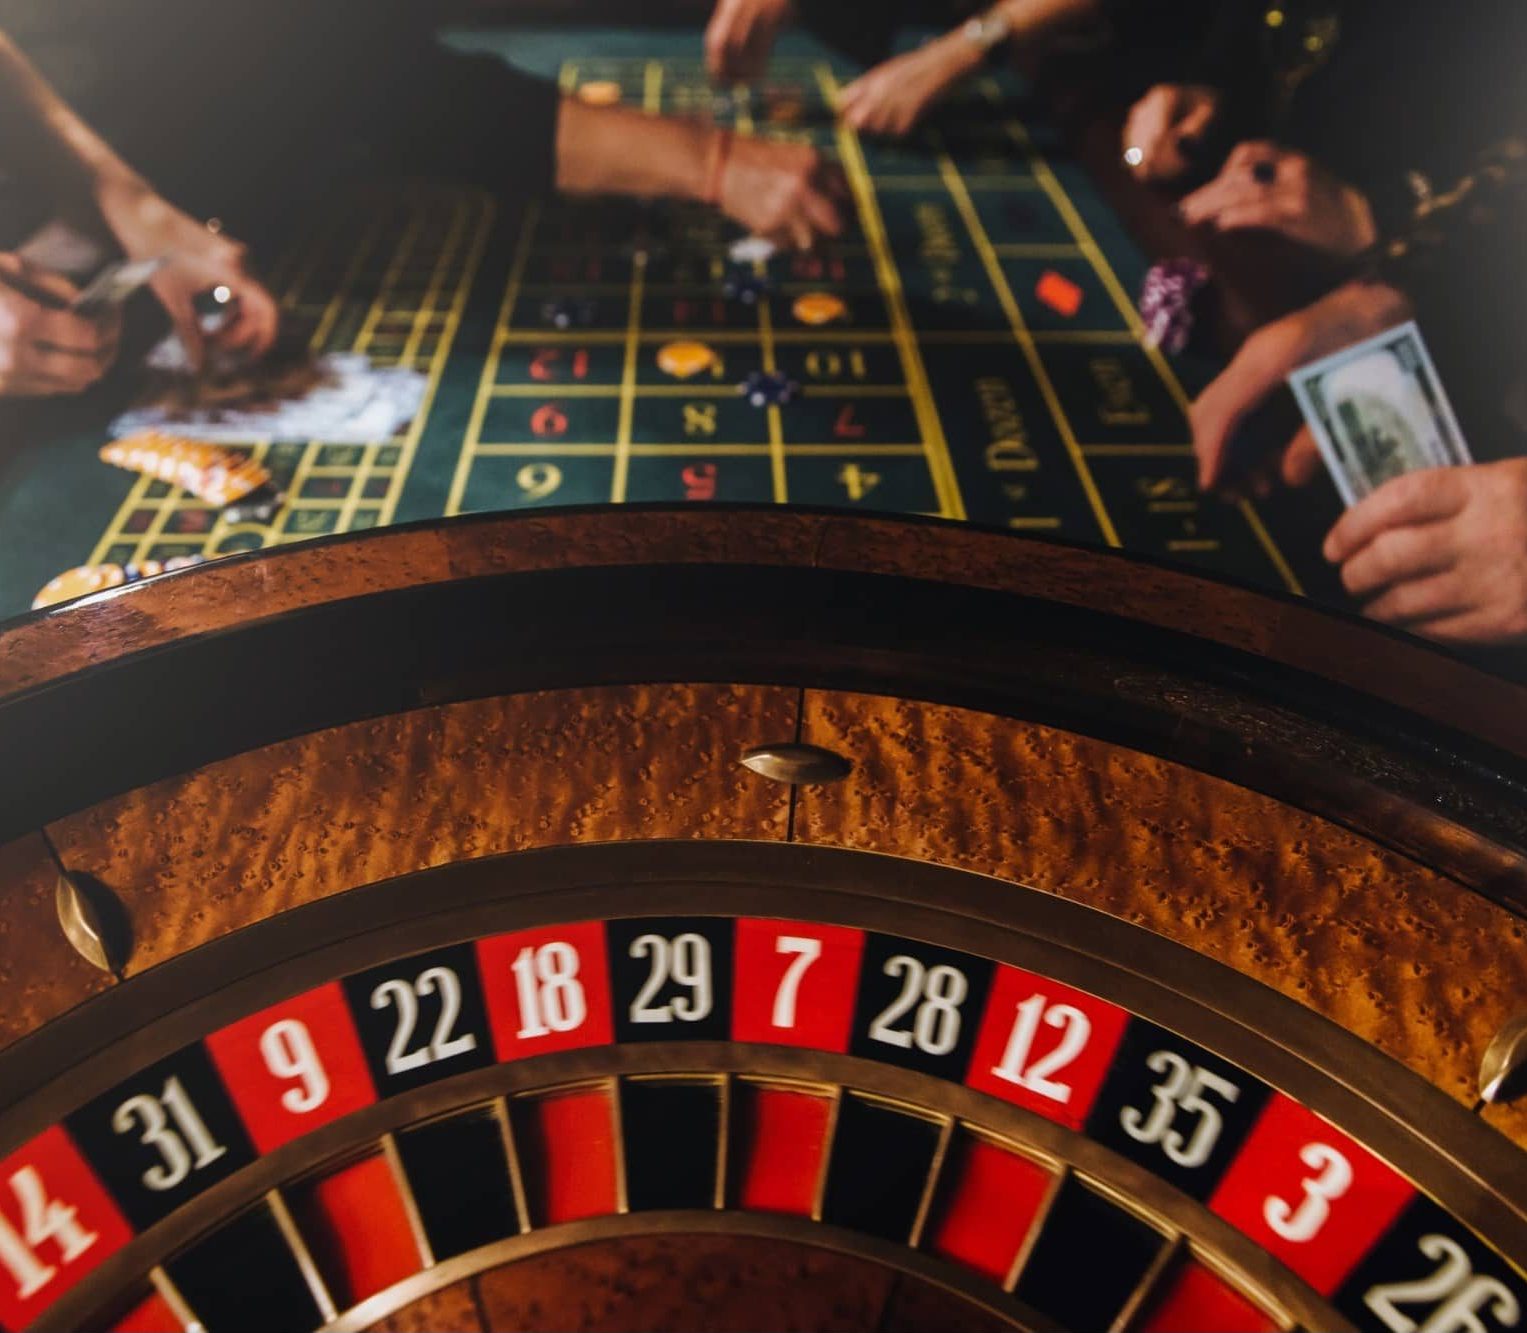 casino theme pocker game unrecognizable gamblers 2022 04 01 06 17 51 utc e1656335717271